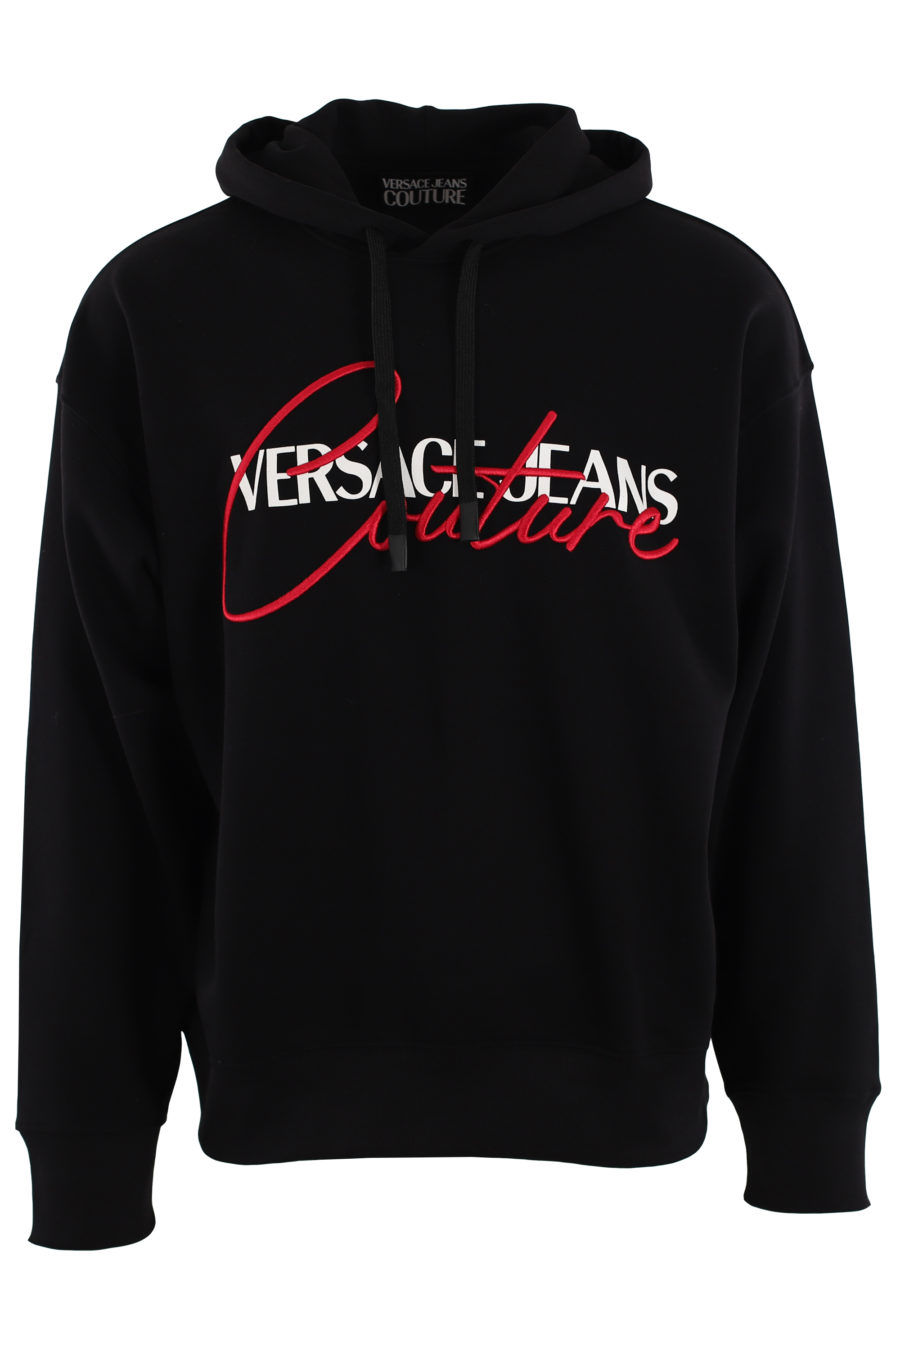 Sudadera negra con capucha y logo blanco y rojo bordado - IMG 0461